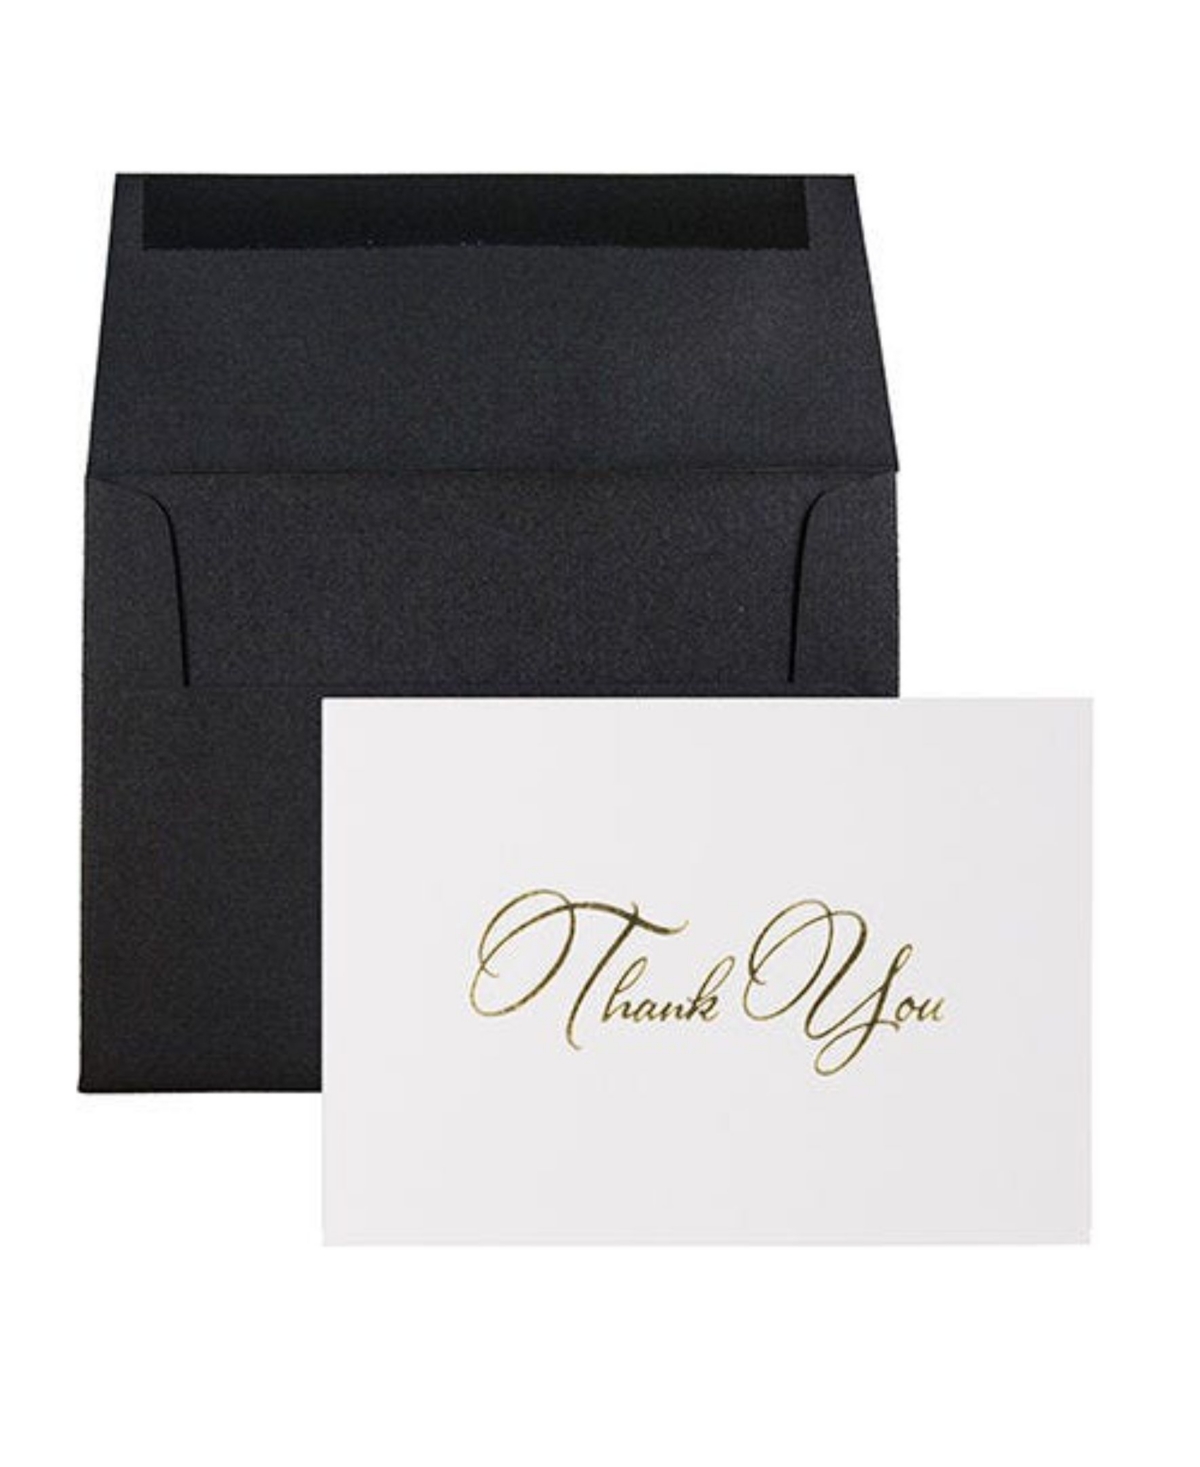 Jam Paper Thank You Card Sets In Gold Script Cards Black Linen Envelopes